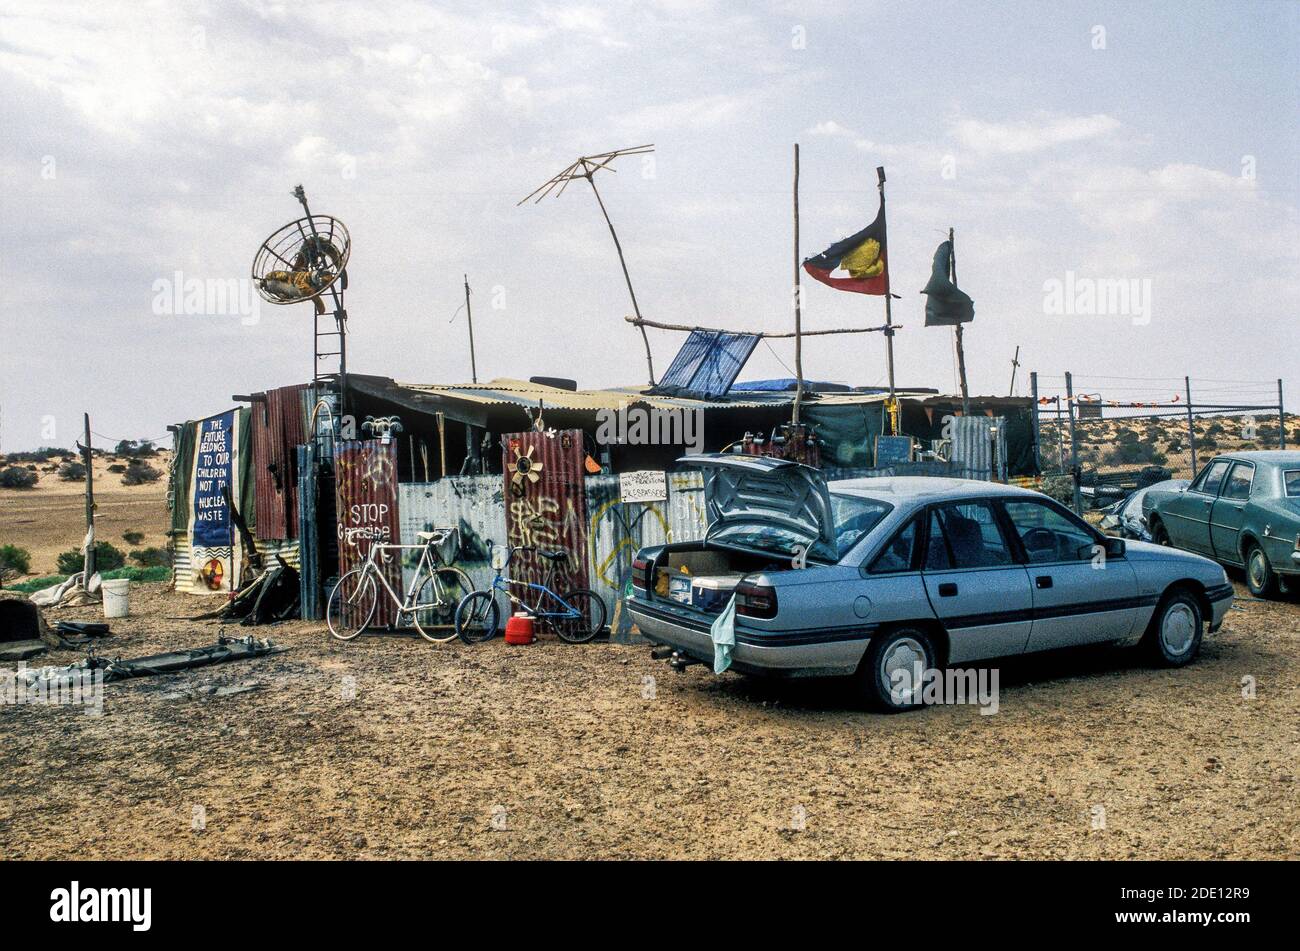 Campamento de protesta antinuclear cerca del lago Eyre, en el desierto de Australia Meridional. El lema de la izquierda dice: "El futuro pertenece a nuestros hijos, no a los residuos nucleares". Foto de stock